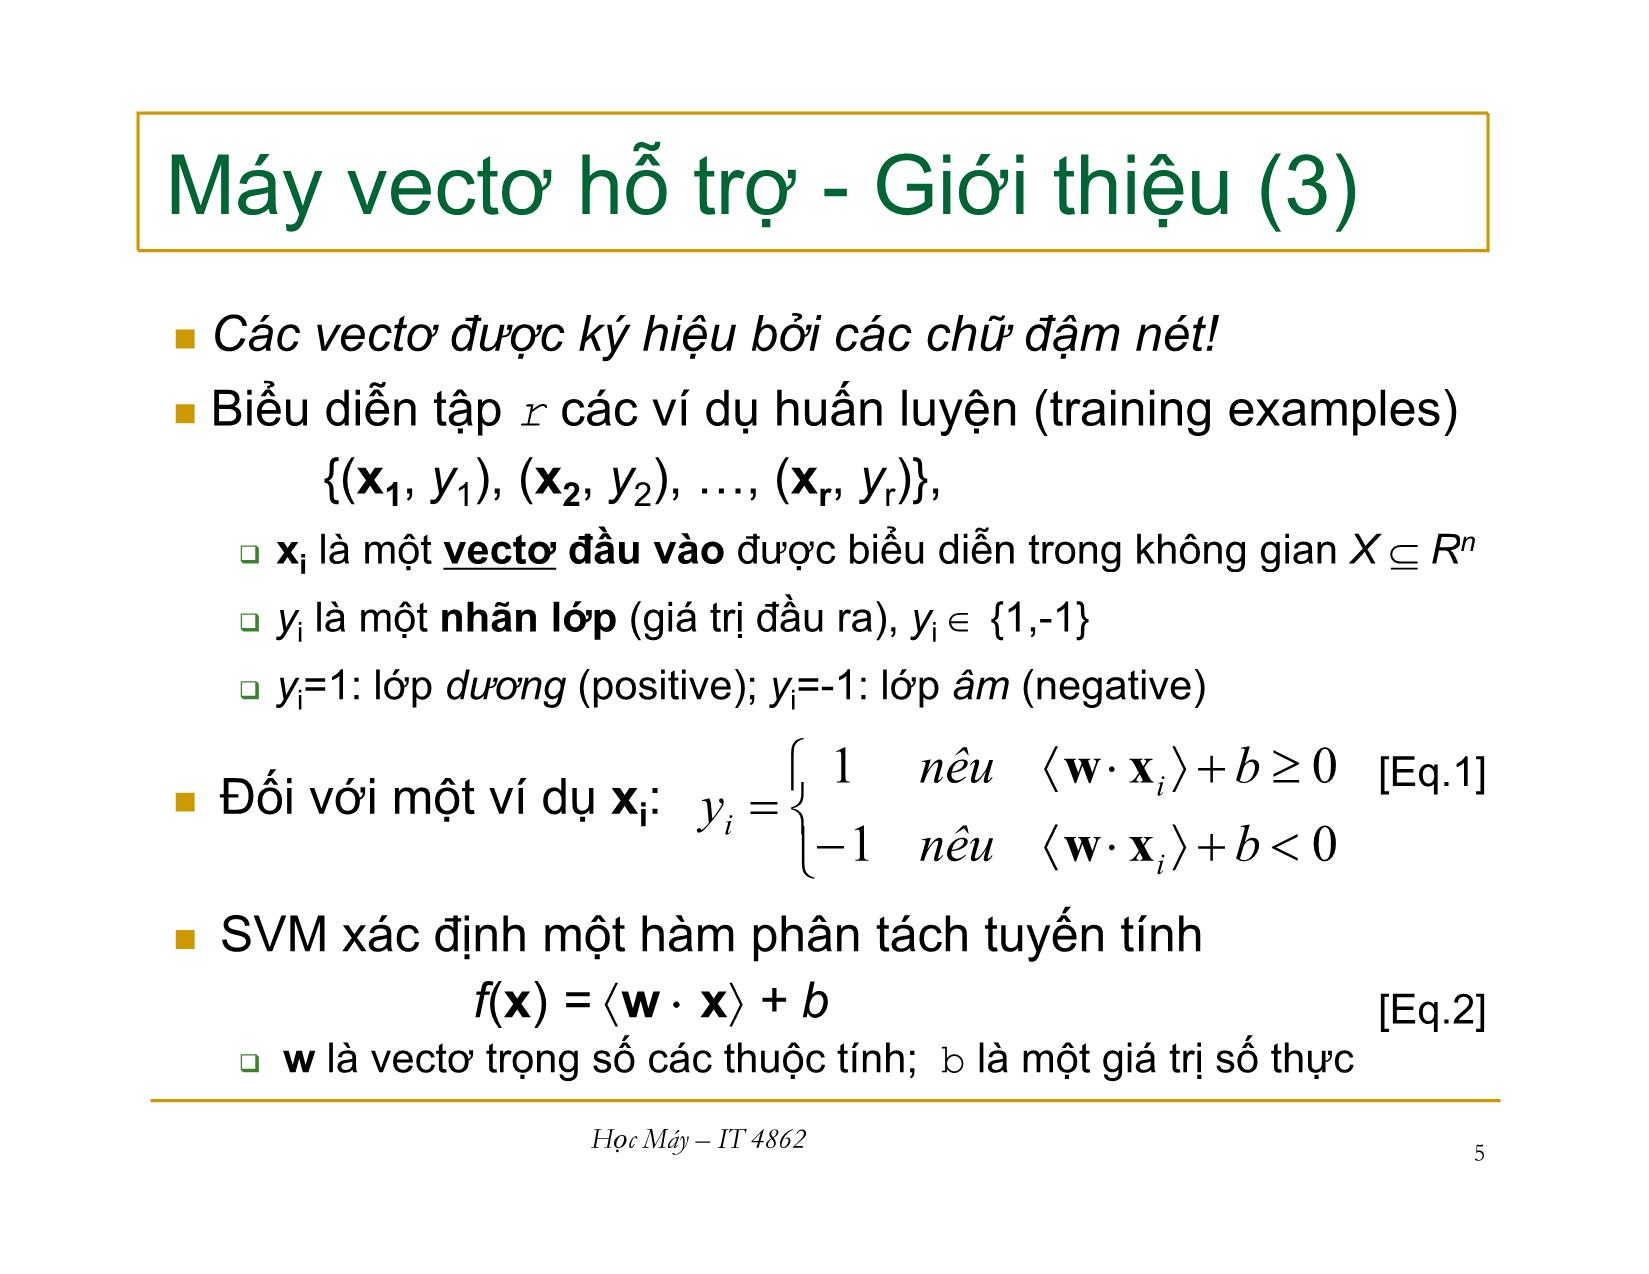 Bài giảng Học máy - Bài 9: Máy vecto hỗ trợ - Nguyễn Nhật Quang trang 5